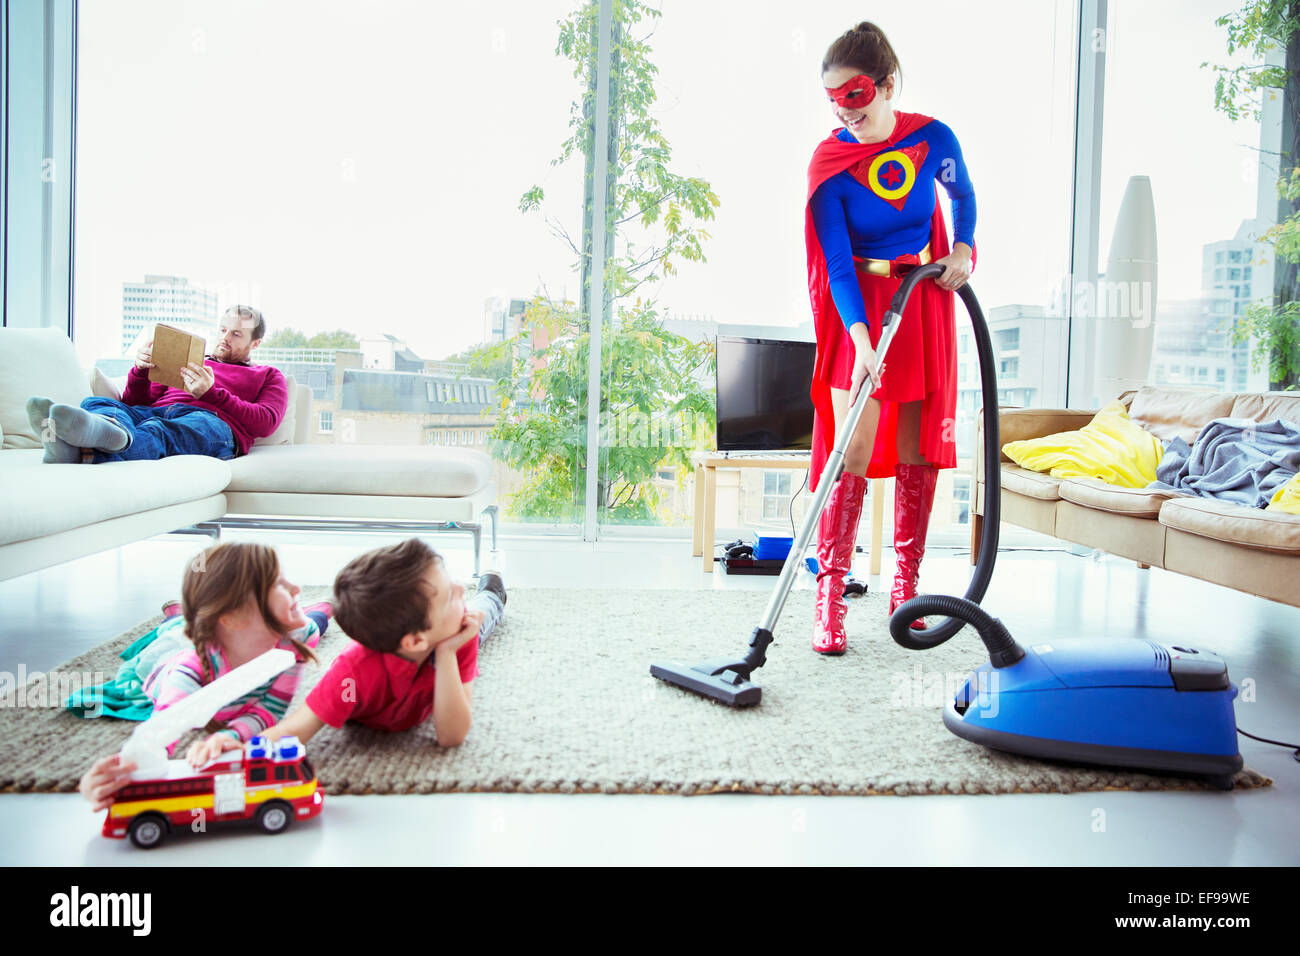 Superhero vacuuming around family in living room Stock Photo